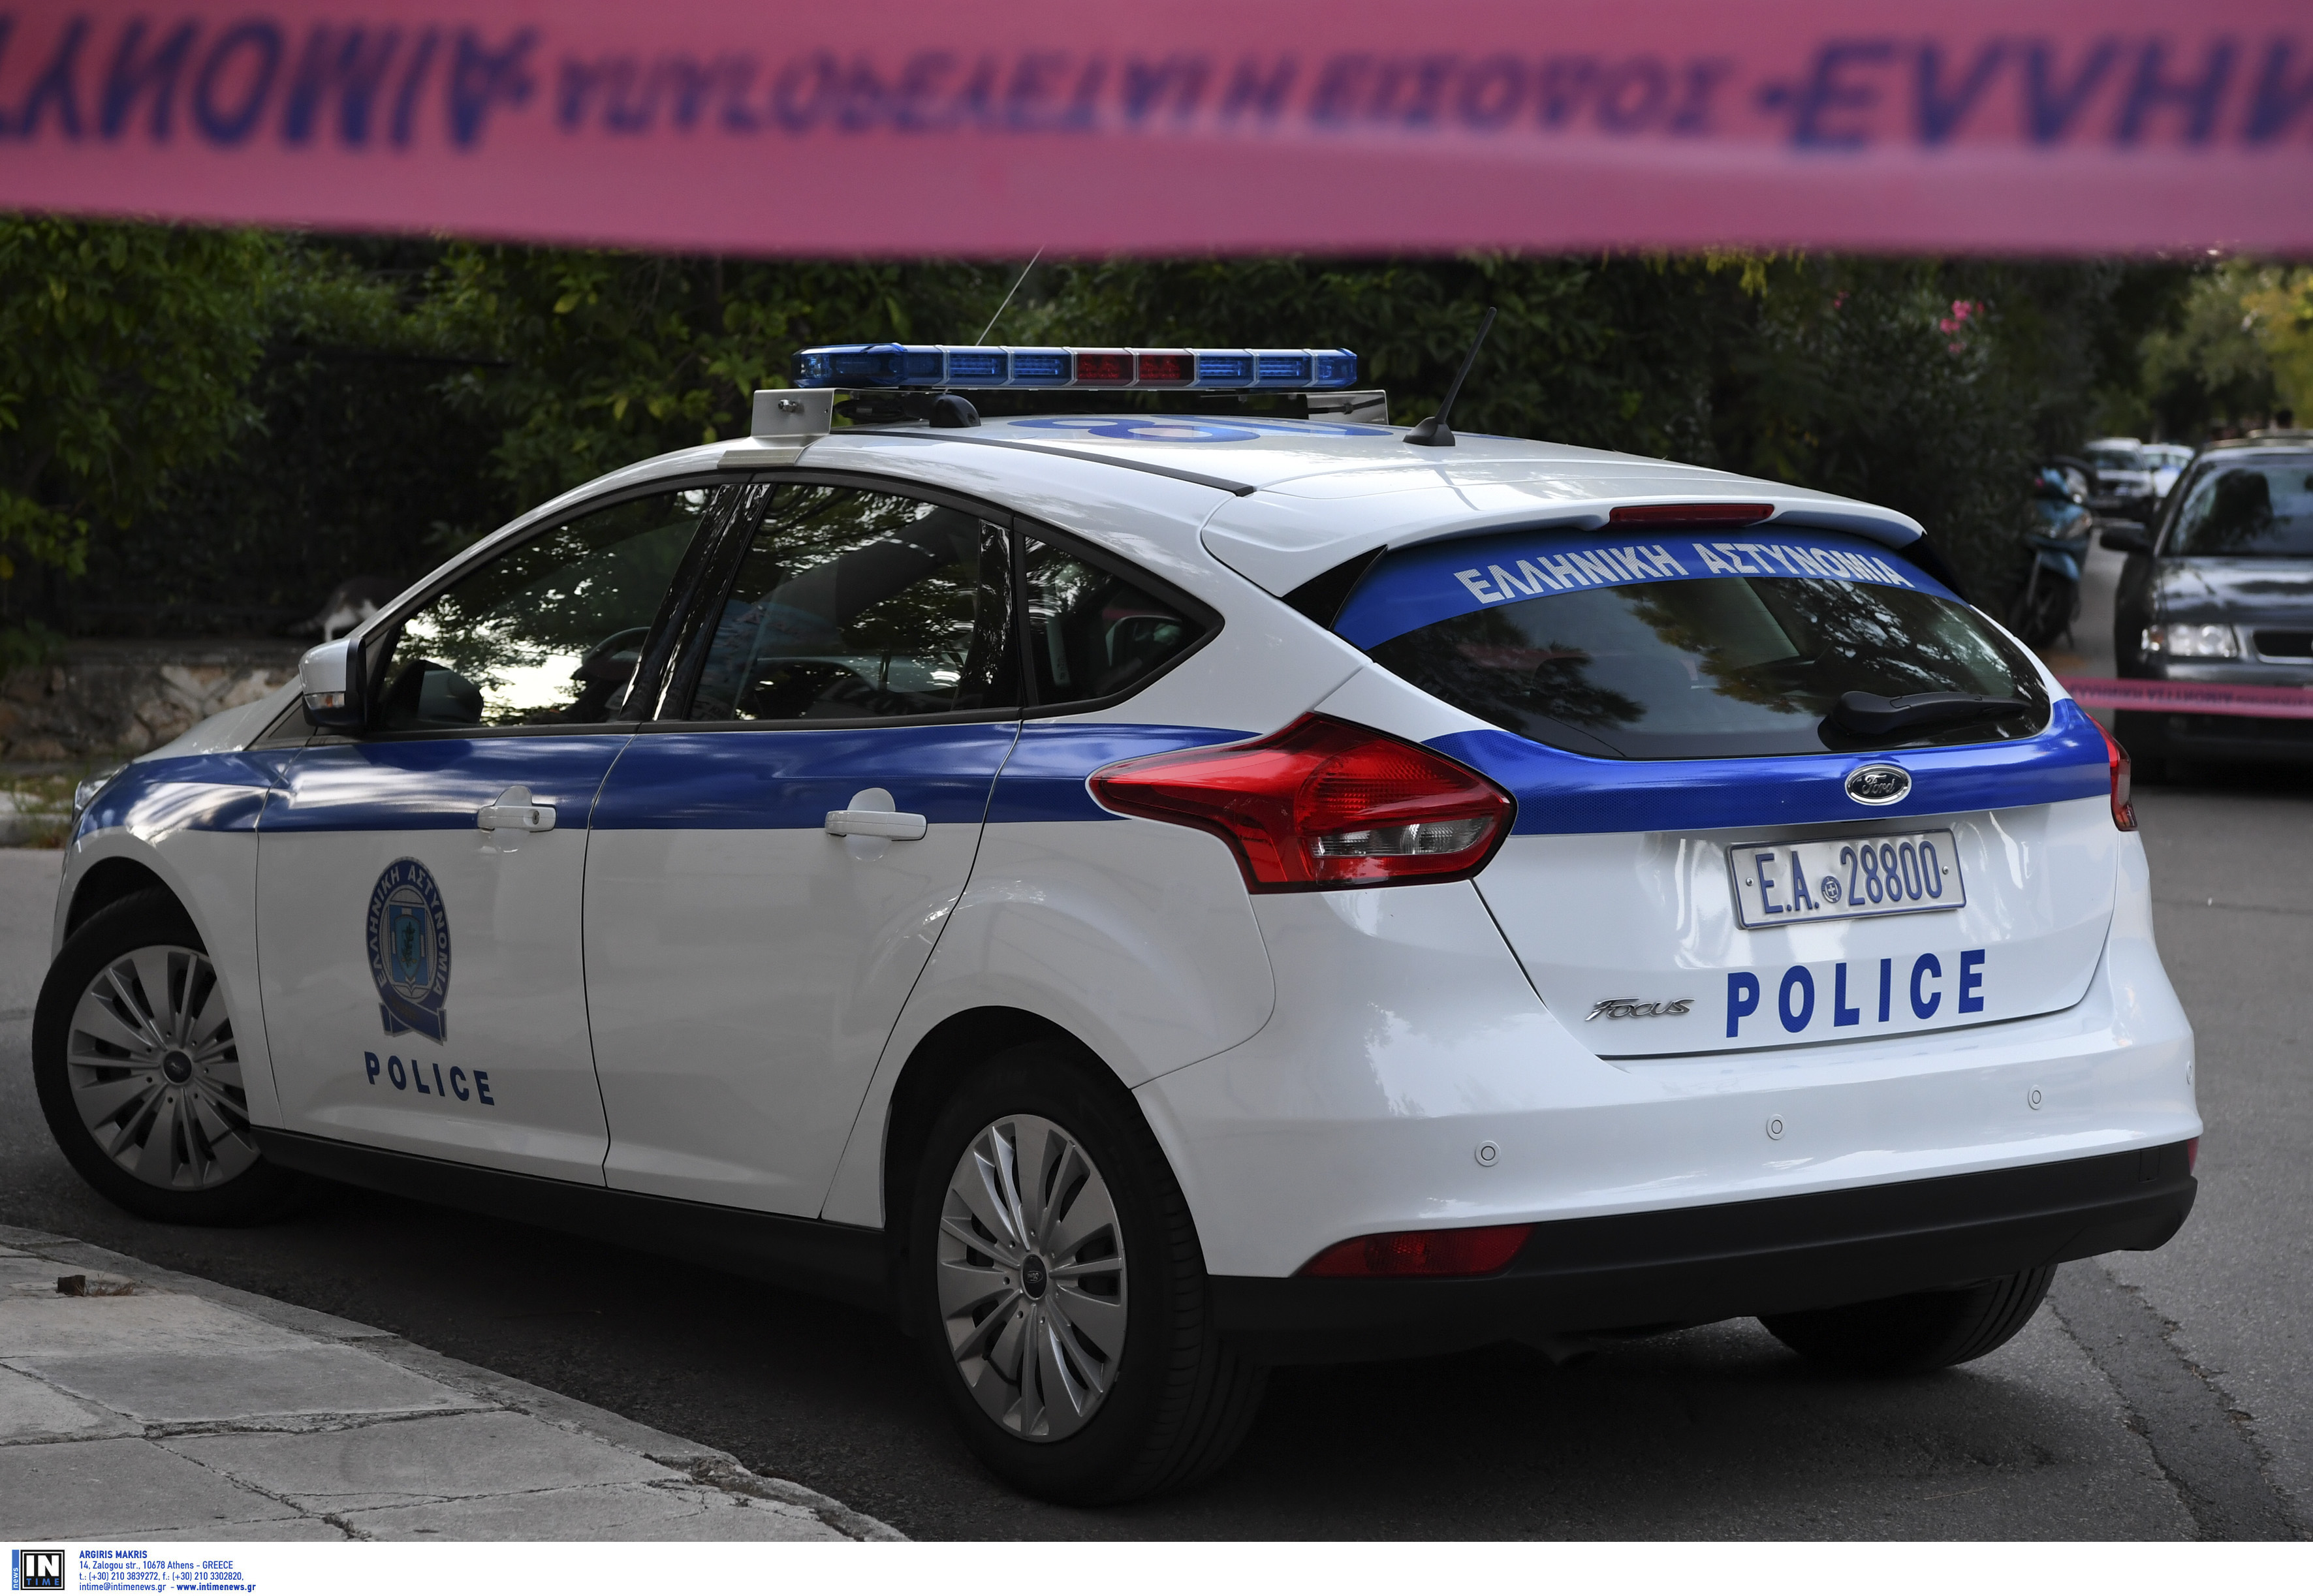 Τρίκαλα: Αστυνομικοί χωρίς περιπολικά και αλεξίσφαιρα γιλέκα – Τα αιτήματα στον Μιχάλη Χρυσοχοϊδη!